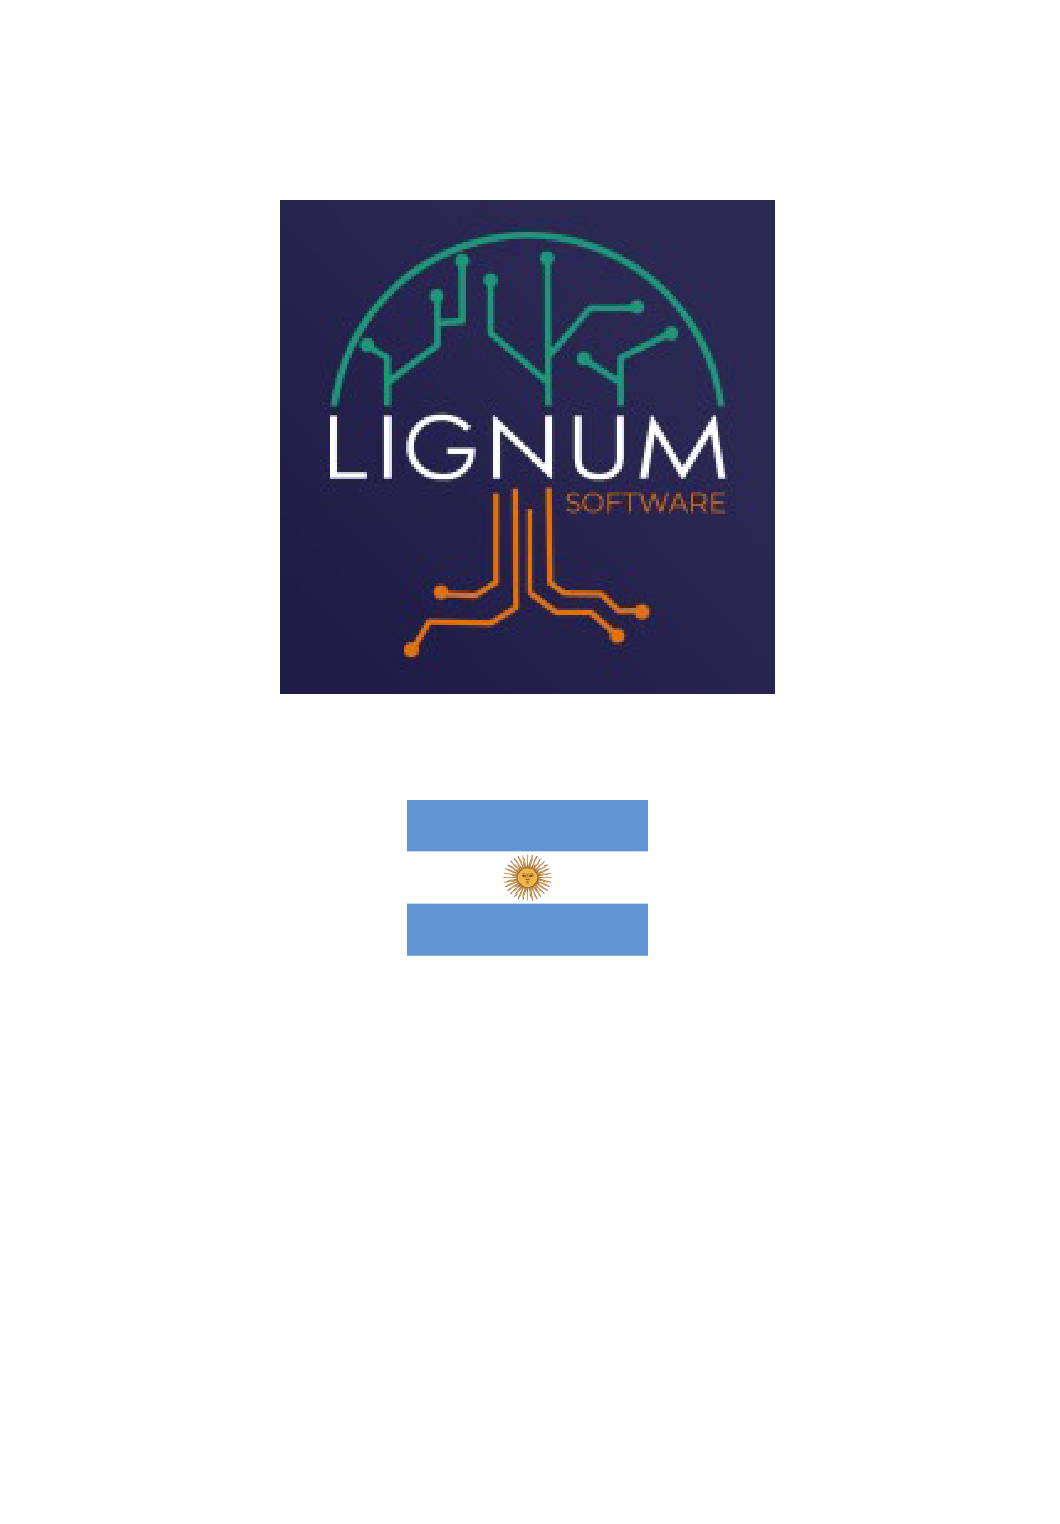 Lignium Software